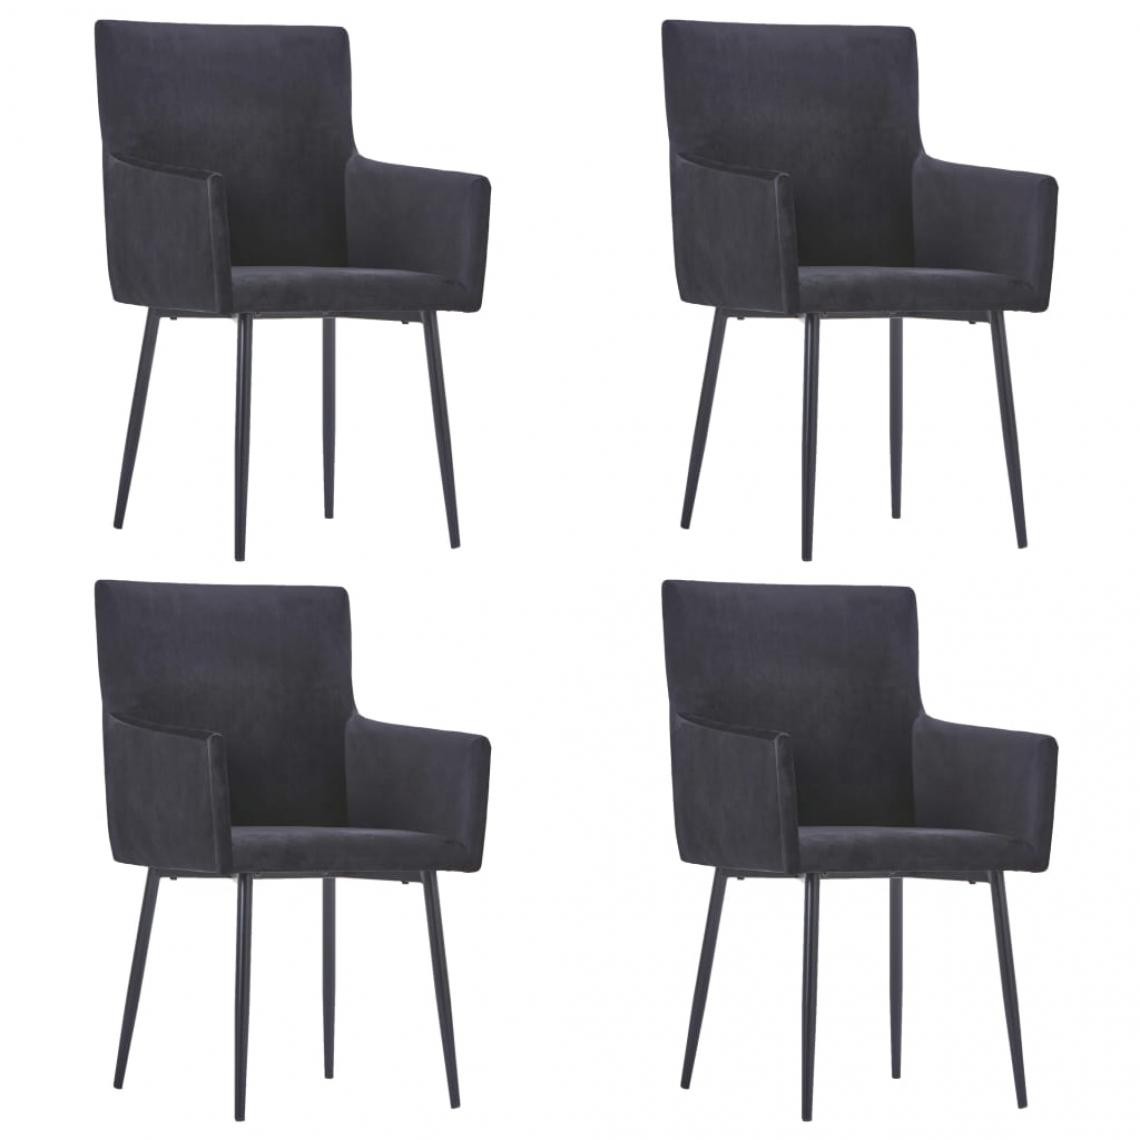 Decoshop26 - Lot de 4 chaises de salle à manger cuisine avec accoudoirs design moderne velours noir CDS021214 - Chaises